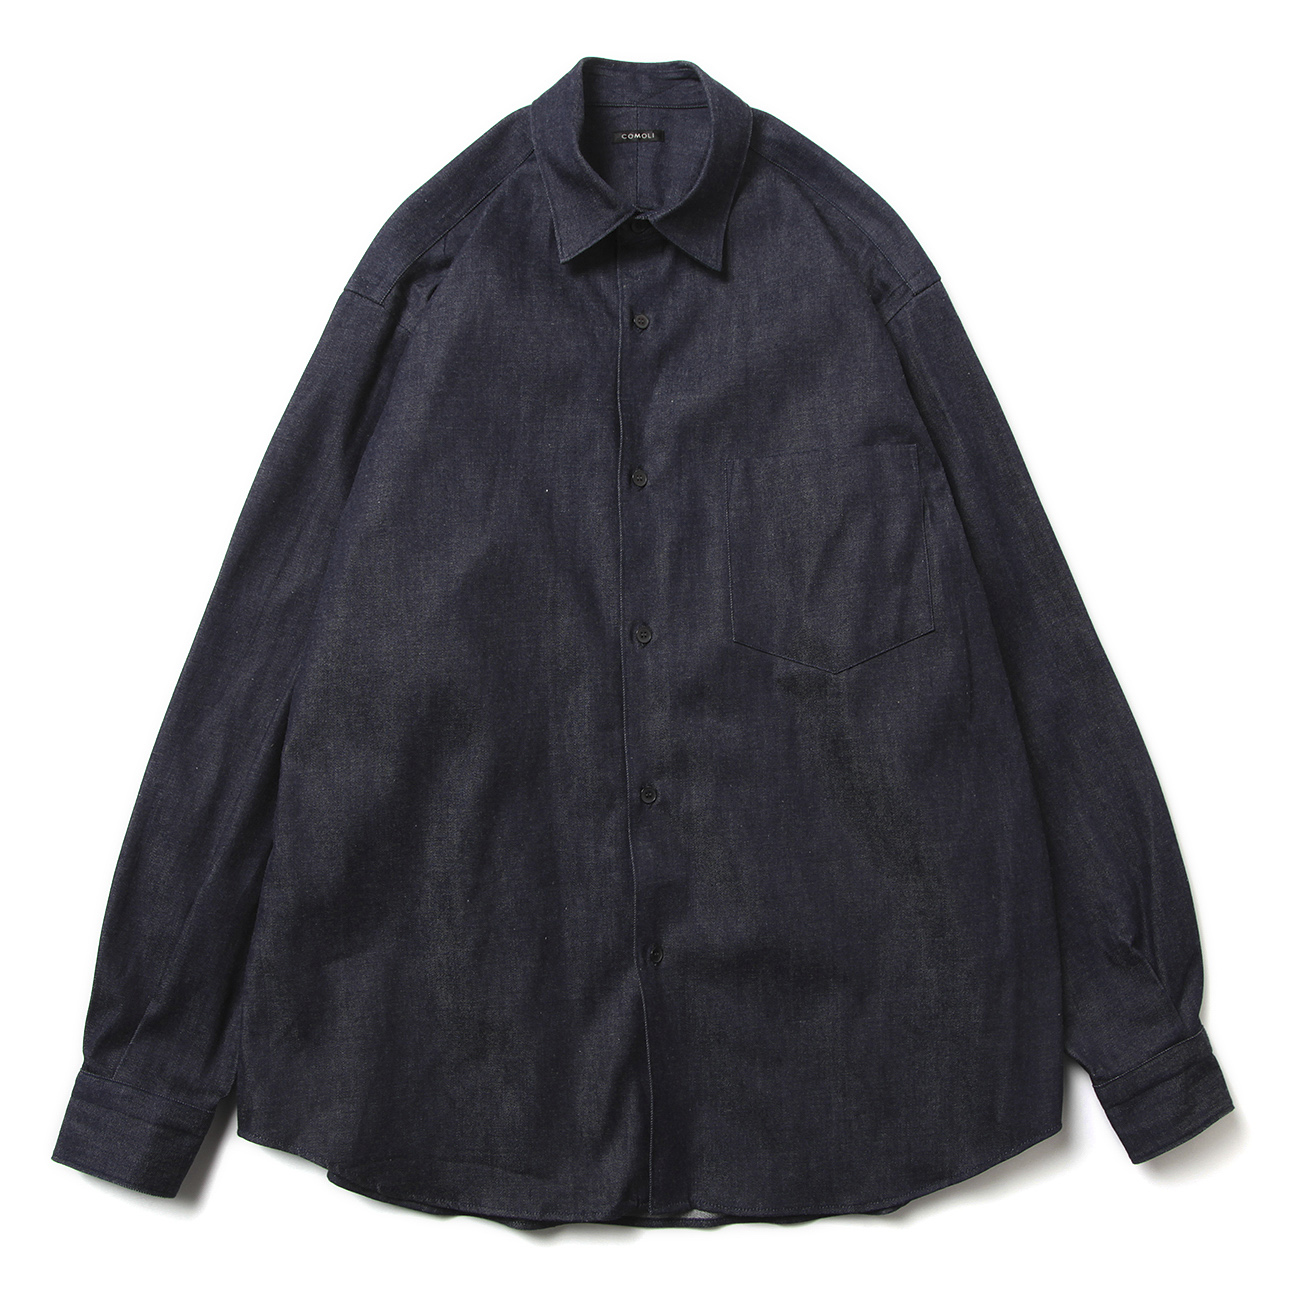 8000円 激安メーカー直販 comoli shirt navy 3 シャツ